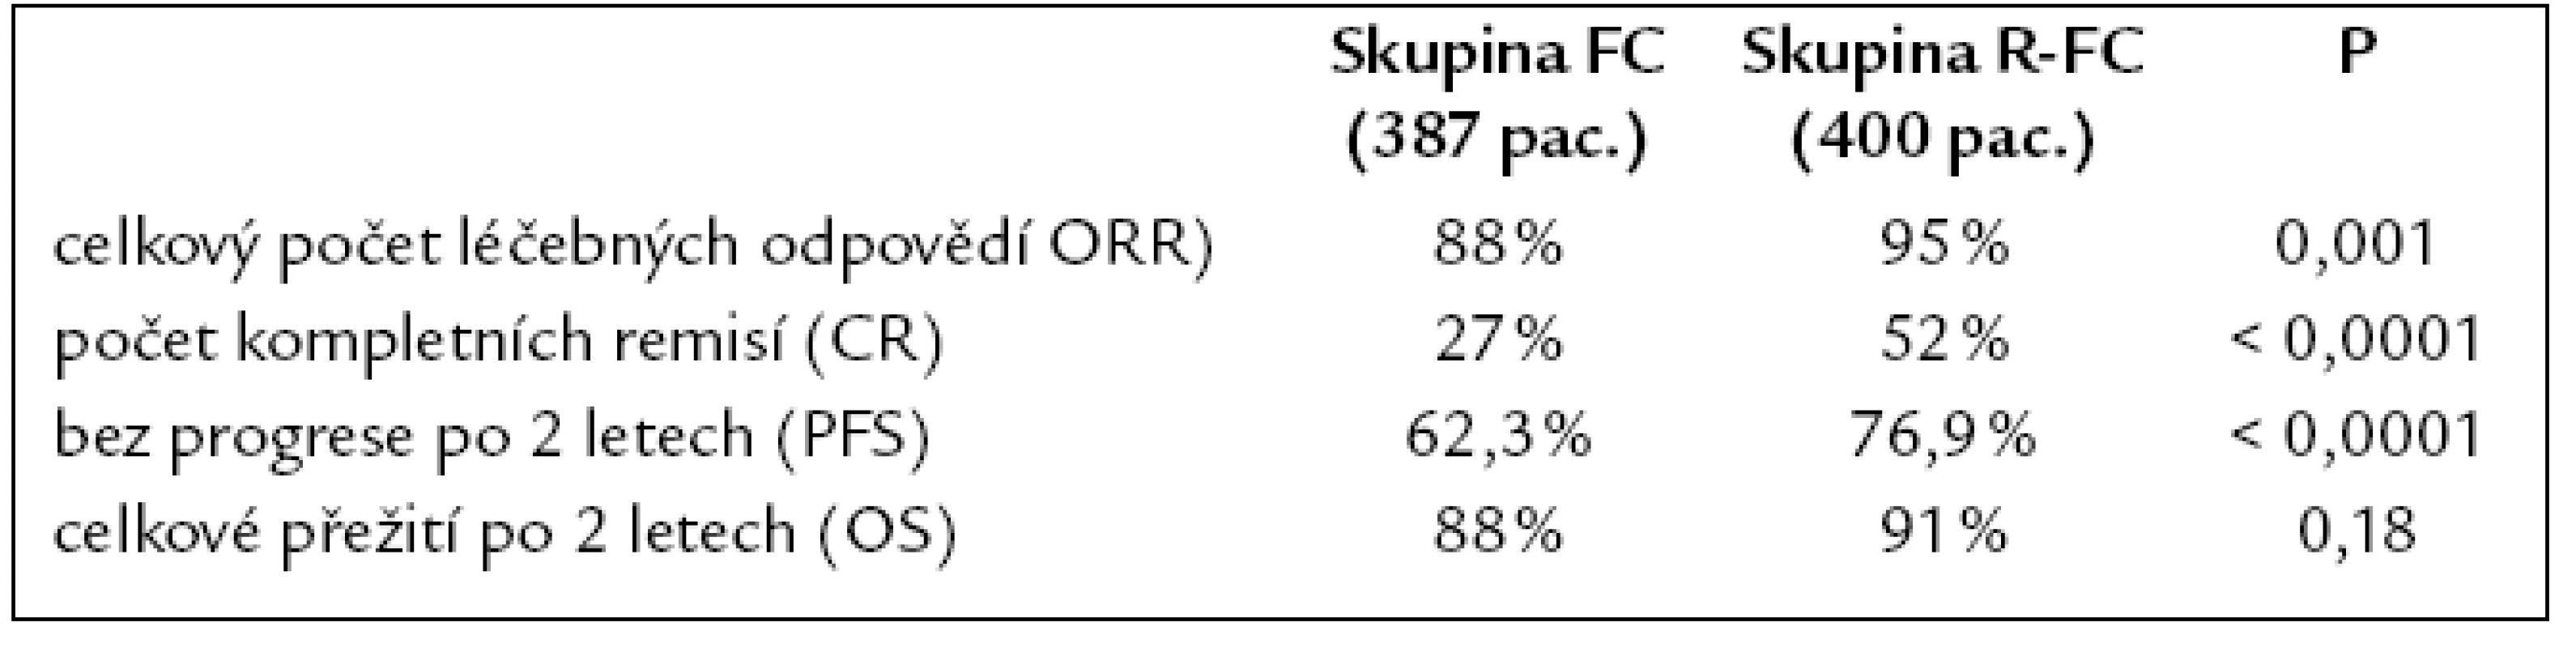 Výsledky klinické randomizované studi e fáze III srovnávající dvojkombinaci fludarabin a cyklofosfamid s trojkombinací rituximab + fludarabin a cyklofosfamid (fludarabin 25 mg/ m&lt;sup&gt;2&lt;/sup&gt; i.v. 1.– 3. den, cyklofosfamid 250 mg/ m&lt;sup&gt;2&lt;/sup&gt; i.v. 1.– 3. den, rituximab 375 mg/ m&lt;sup&gt;2&lt;/sup&gt; i.v. v 1. cyklu a 500 mg/ m&lt;sup&gt;2&lt;/sup&gt; v každém dalším cyklu, celkem 6 cyklů léčby [36].